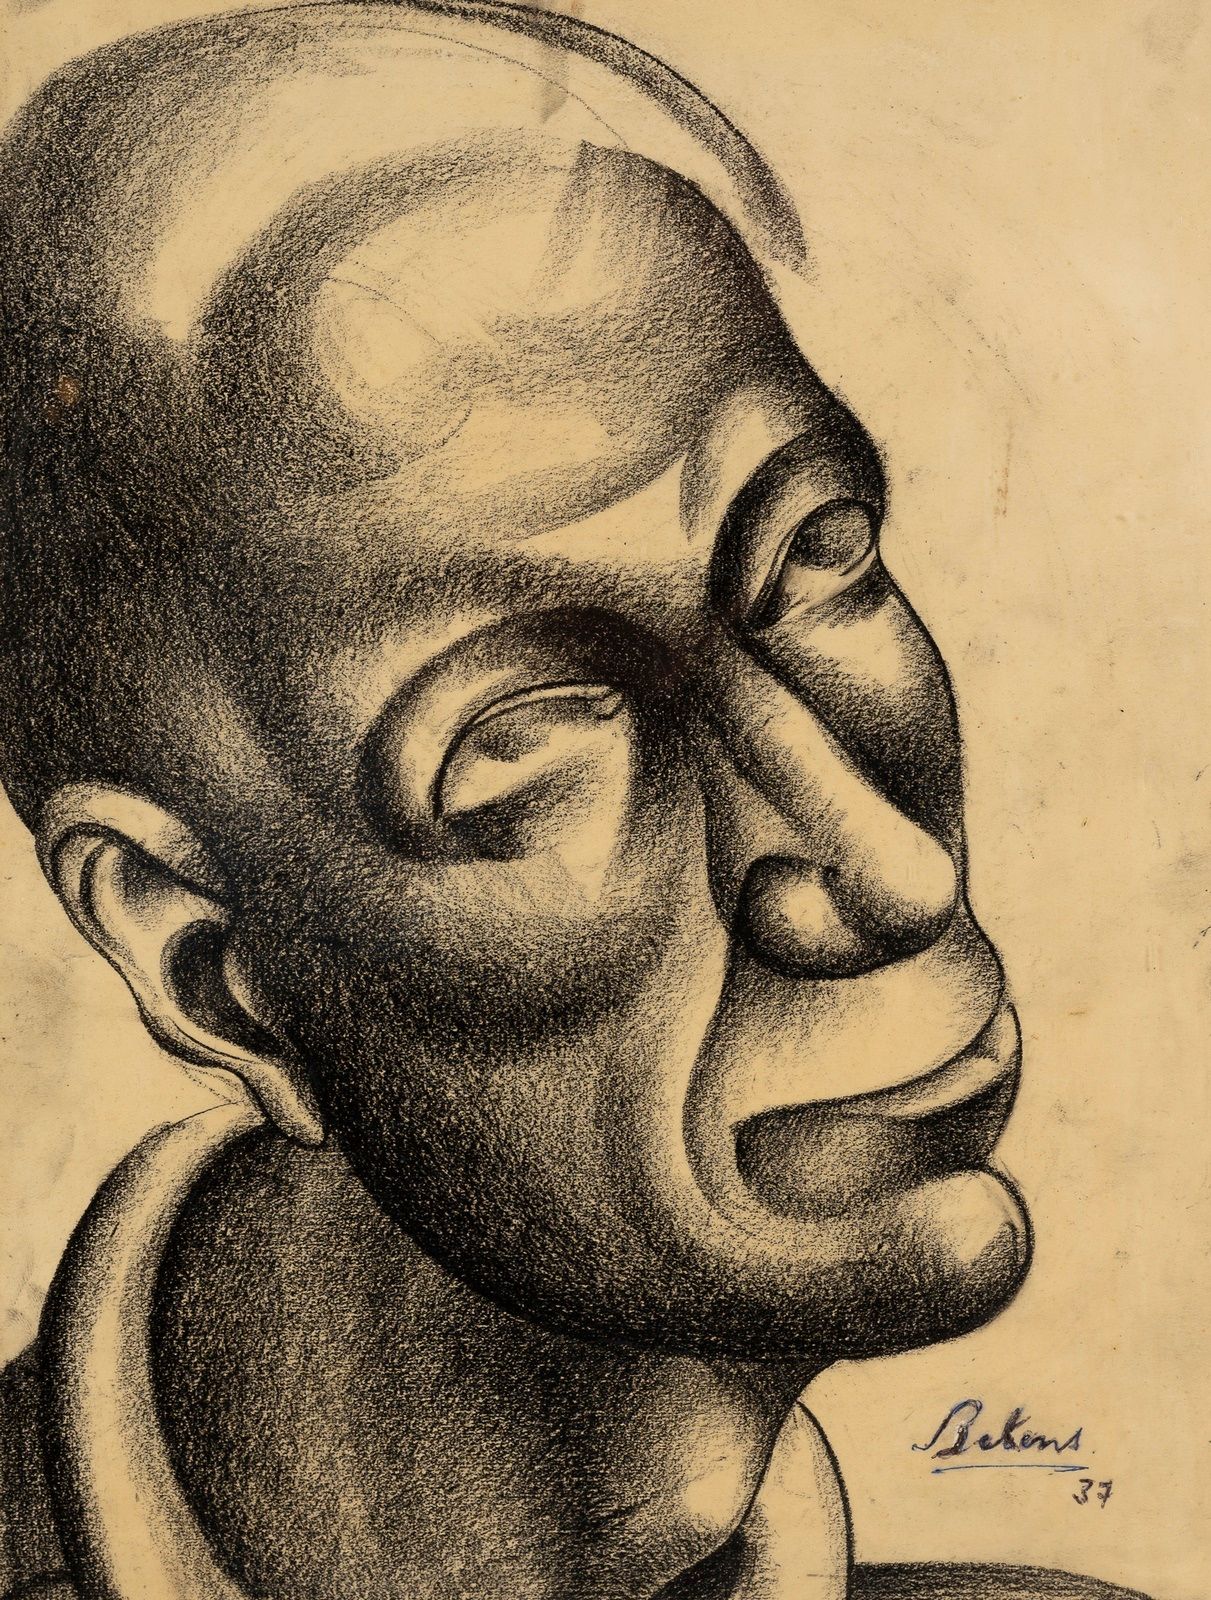 Null Scuola moderna

Ritratto di uomo, 1937

Carbone 

33x26 cm